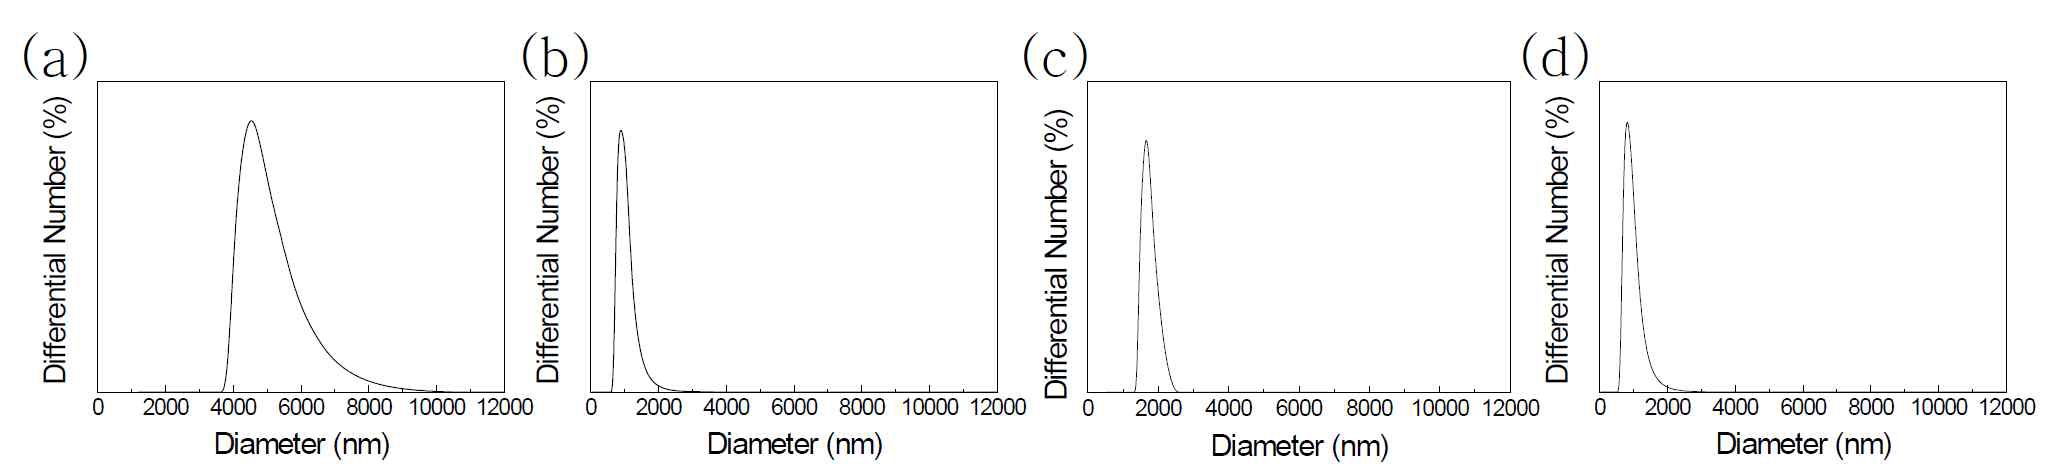 동적 광산란 분석 (a) Bulk, (b) Foodnano, (c) SS-nano, (d) AE-nano